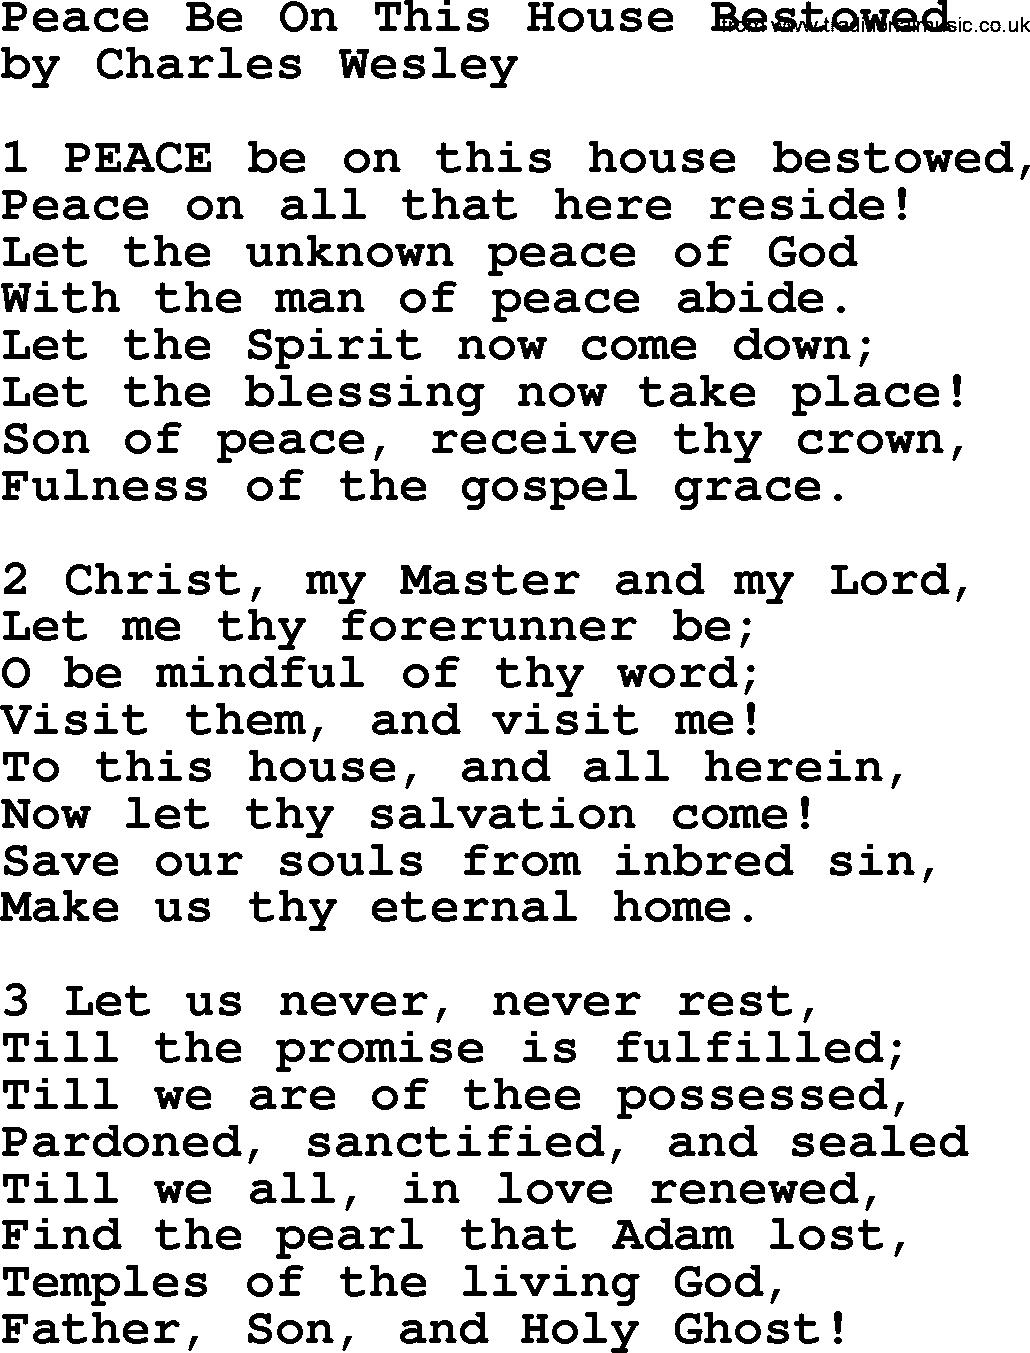 Charles Wesley hymn: Peace Be On This House Bestowed, lyrics